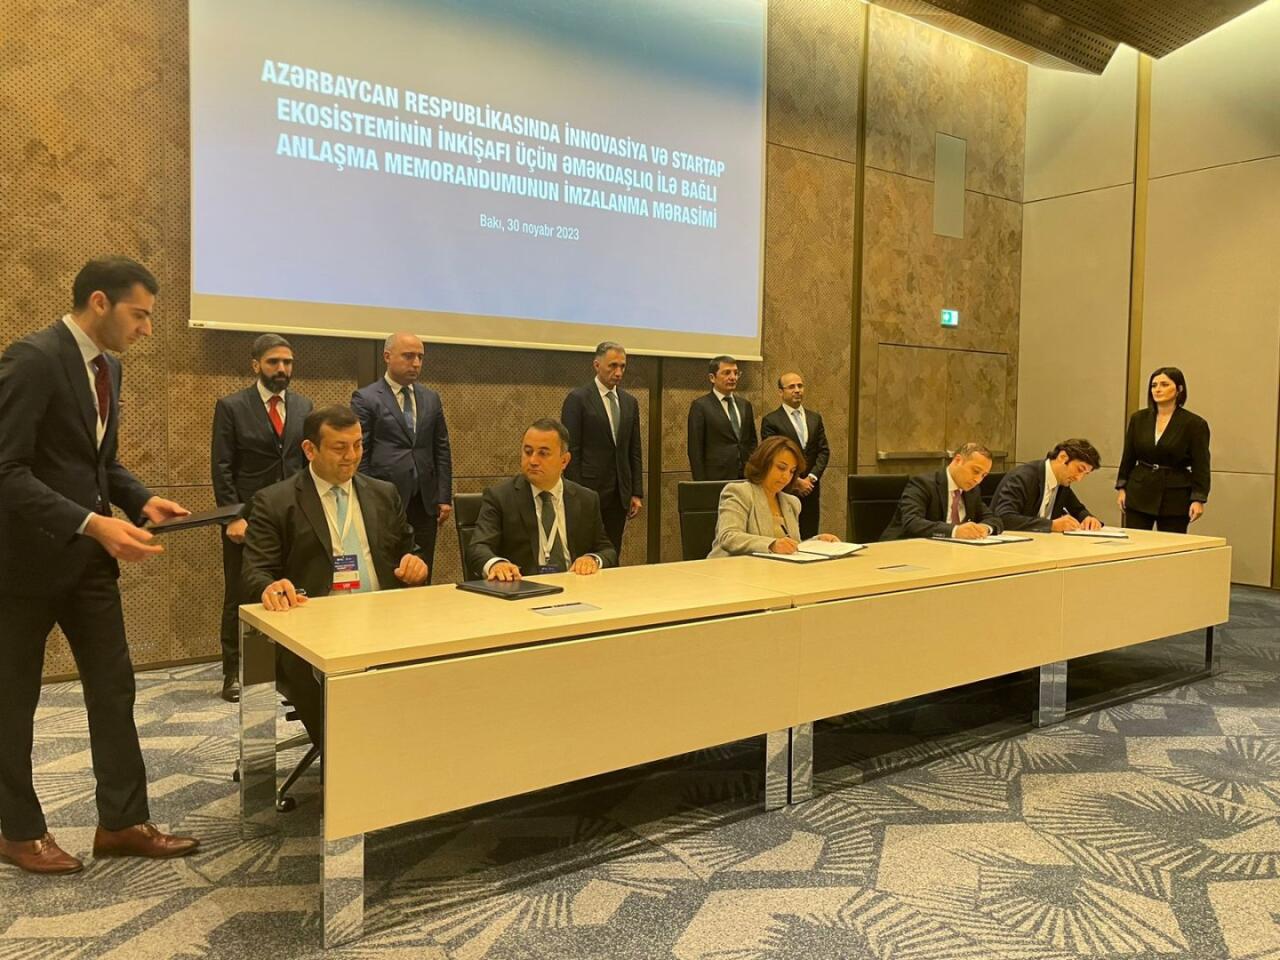 В Азербайджане подписан меморандум о взаимопонимании по сотрудничеству для развития экосистемы инноваций и стартапов